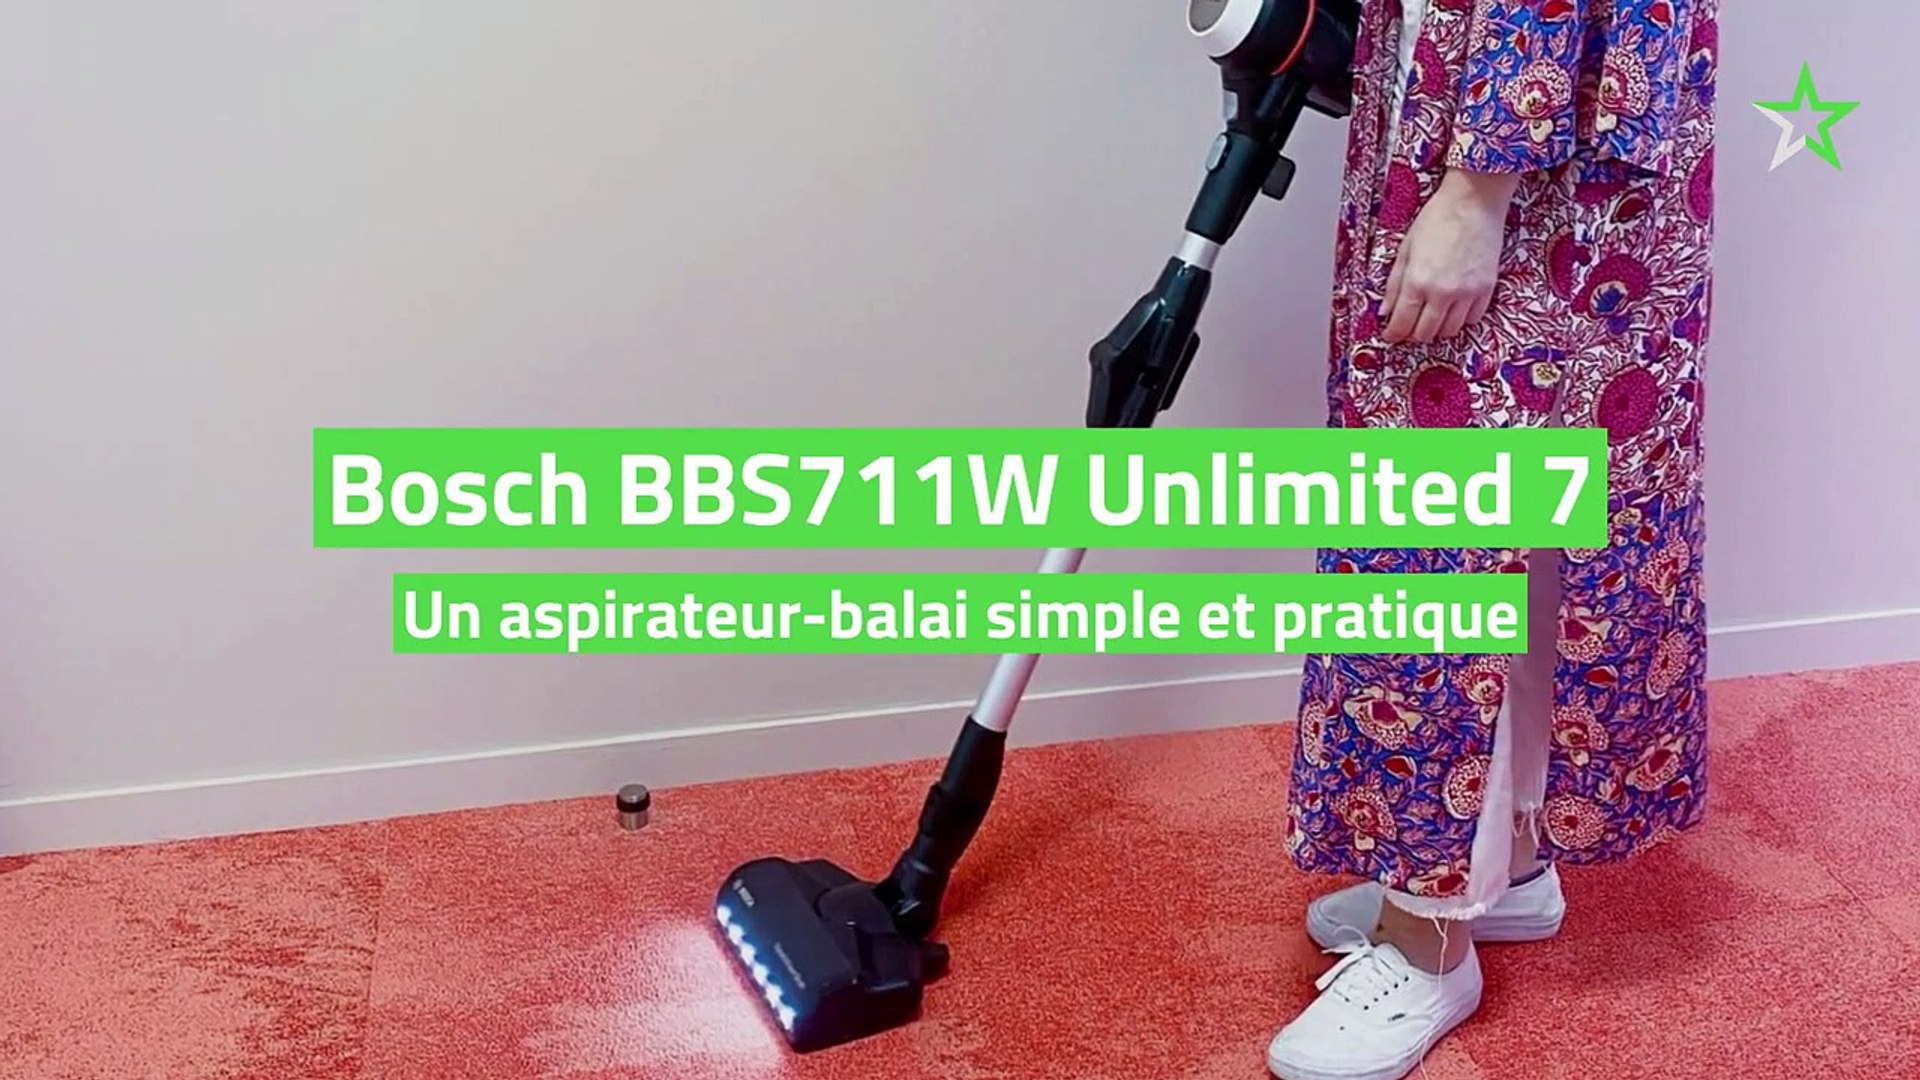 Test Bosch BBS711W Unlimited 7 : un aspirateur-balai simple et pratique -  Vidéo Dailymotion